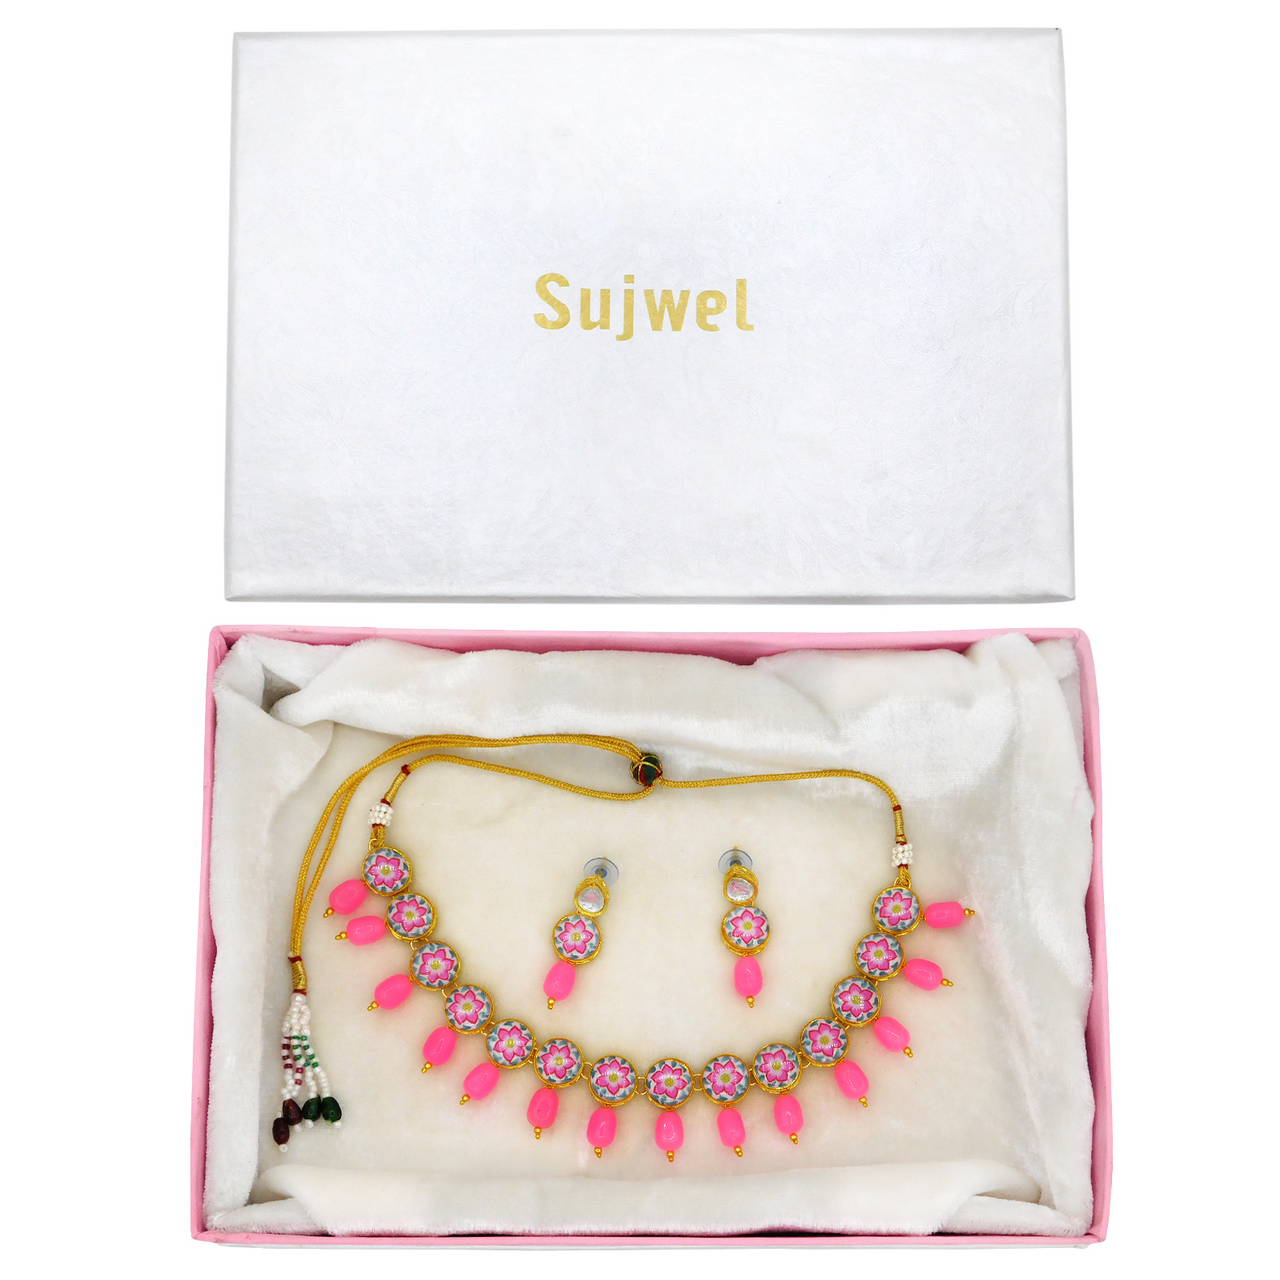 Sujwel Painting with Floral Design Chokar Necklace Set - Sujwel